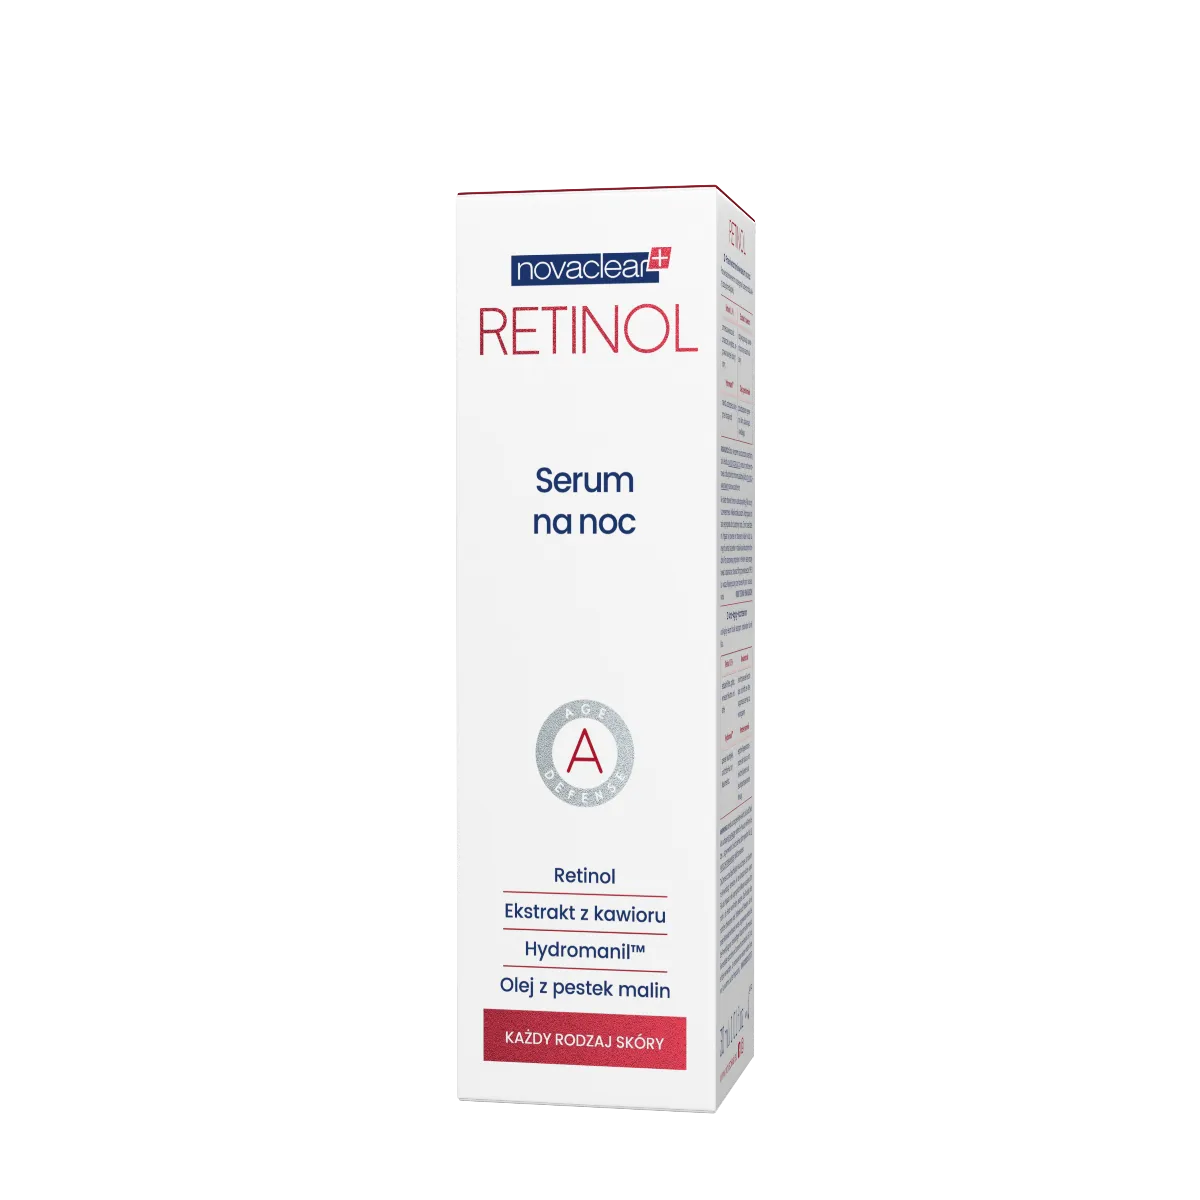 Novaclear Retinol serum na noc, 30 ml 